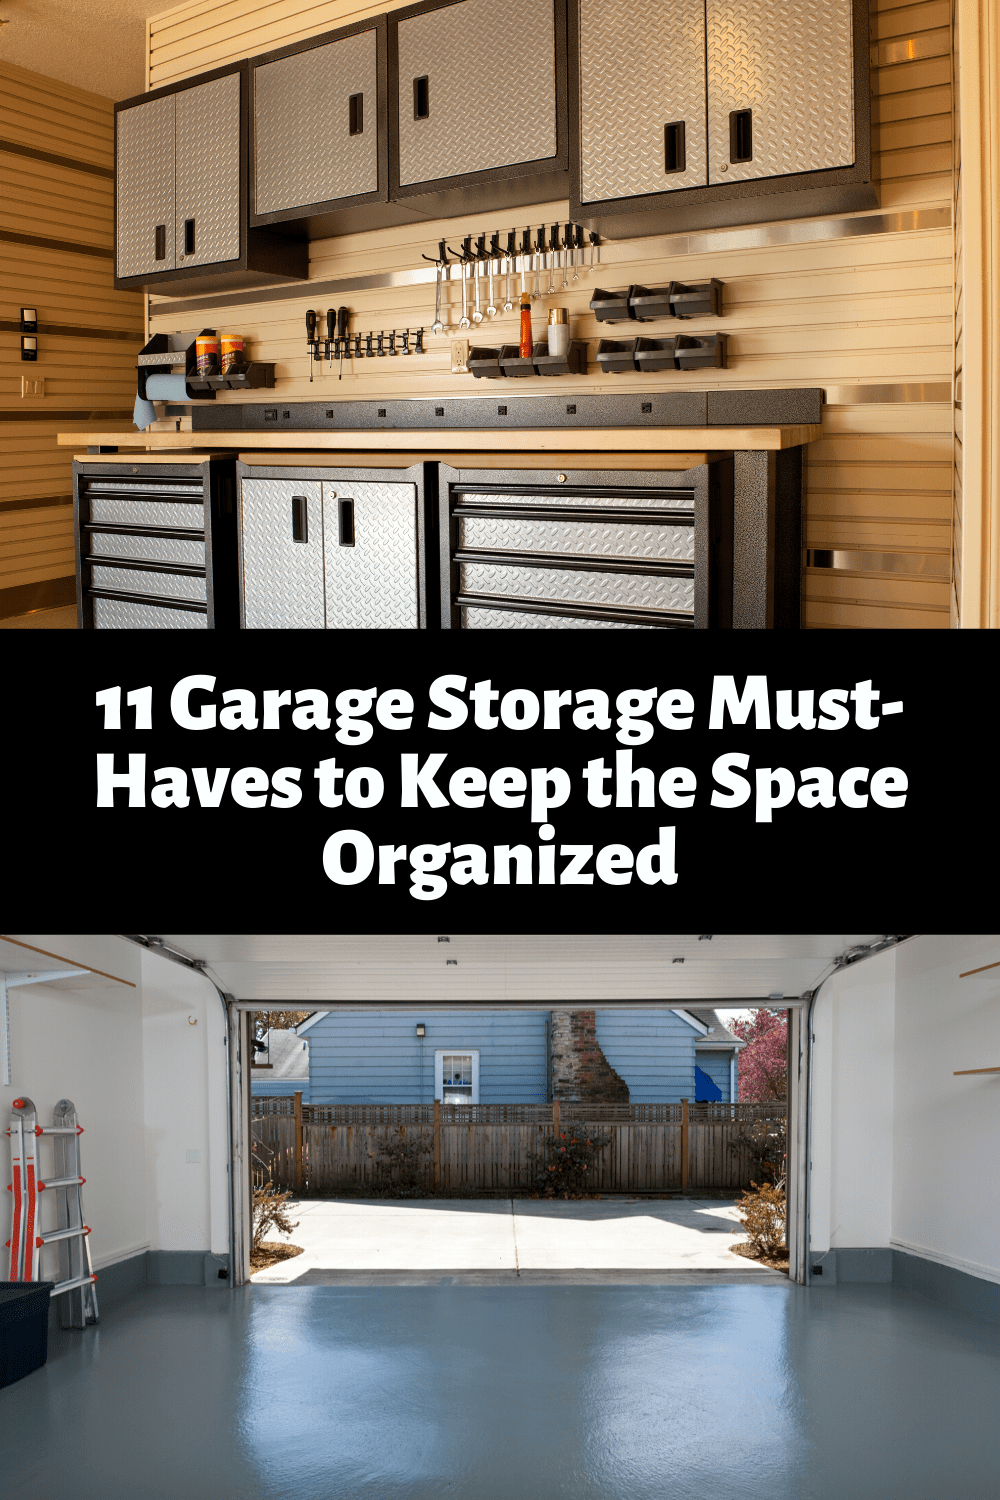 organized garage solutions, garage storage, garage improvement ideas